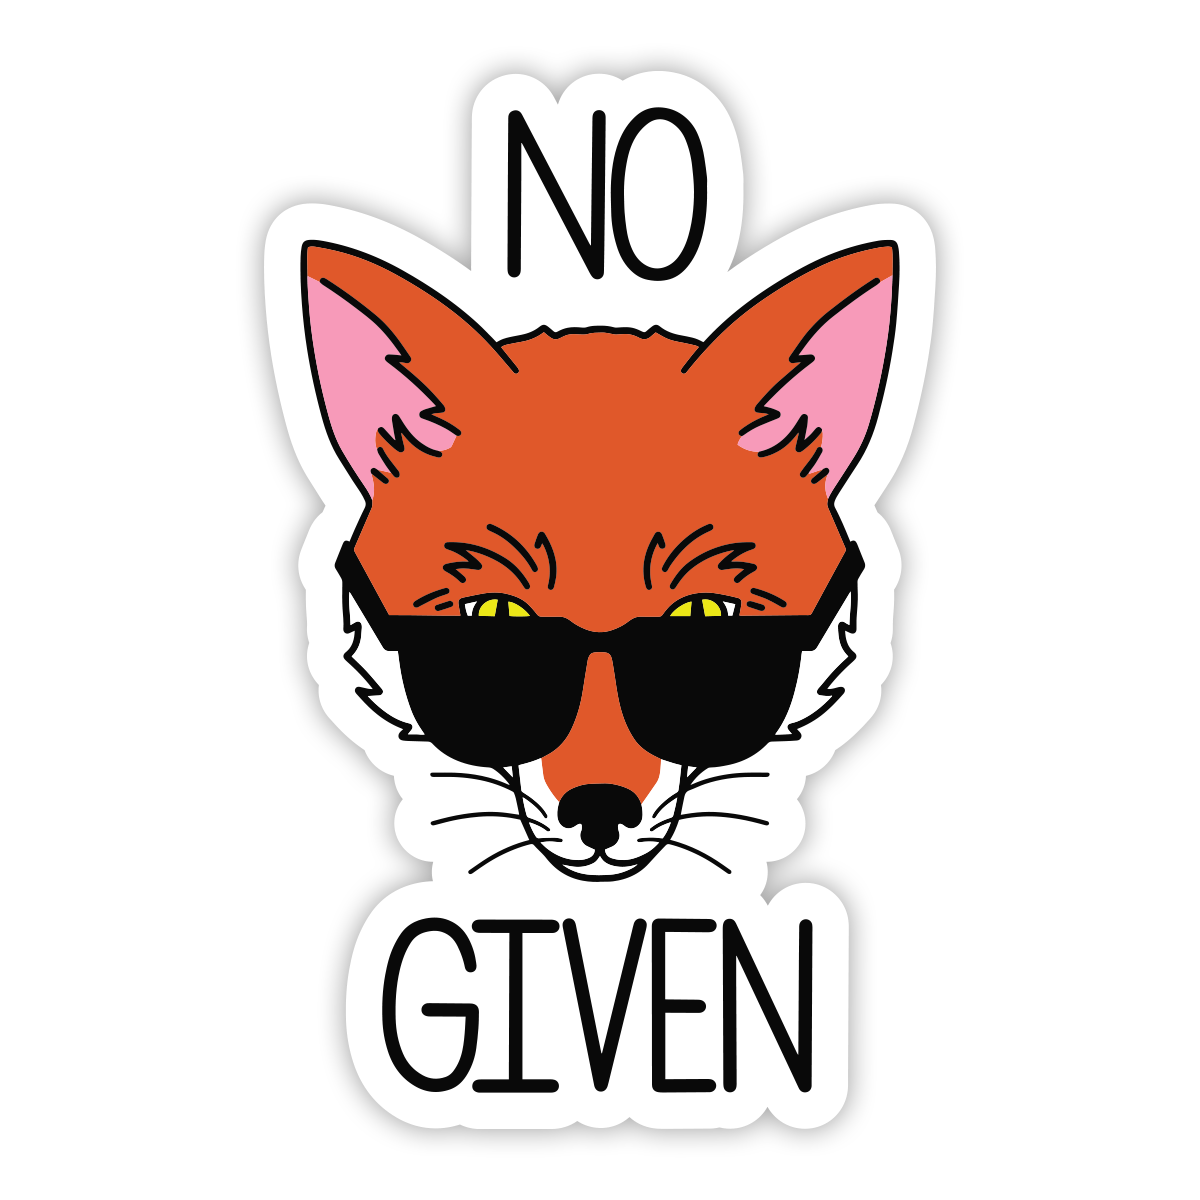 No Fox Given Sticker